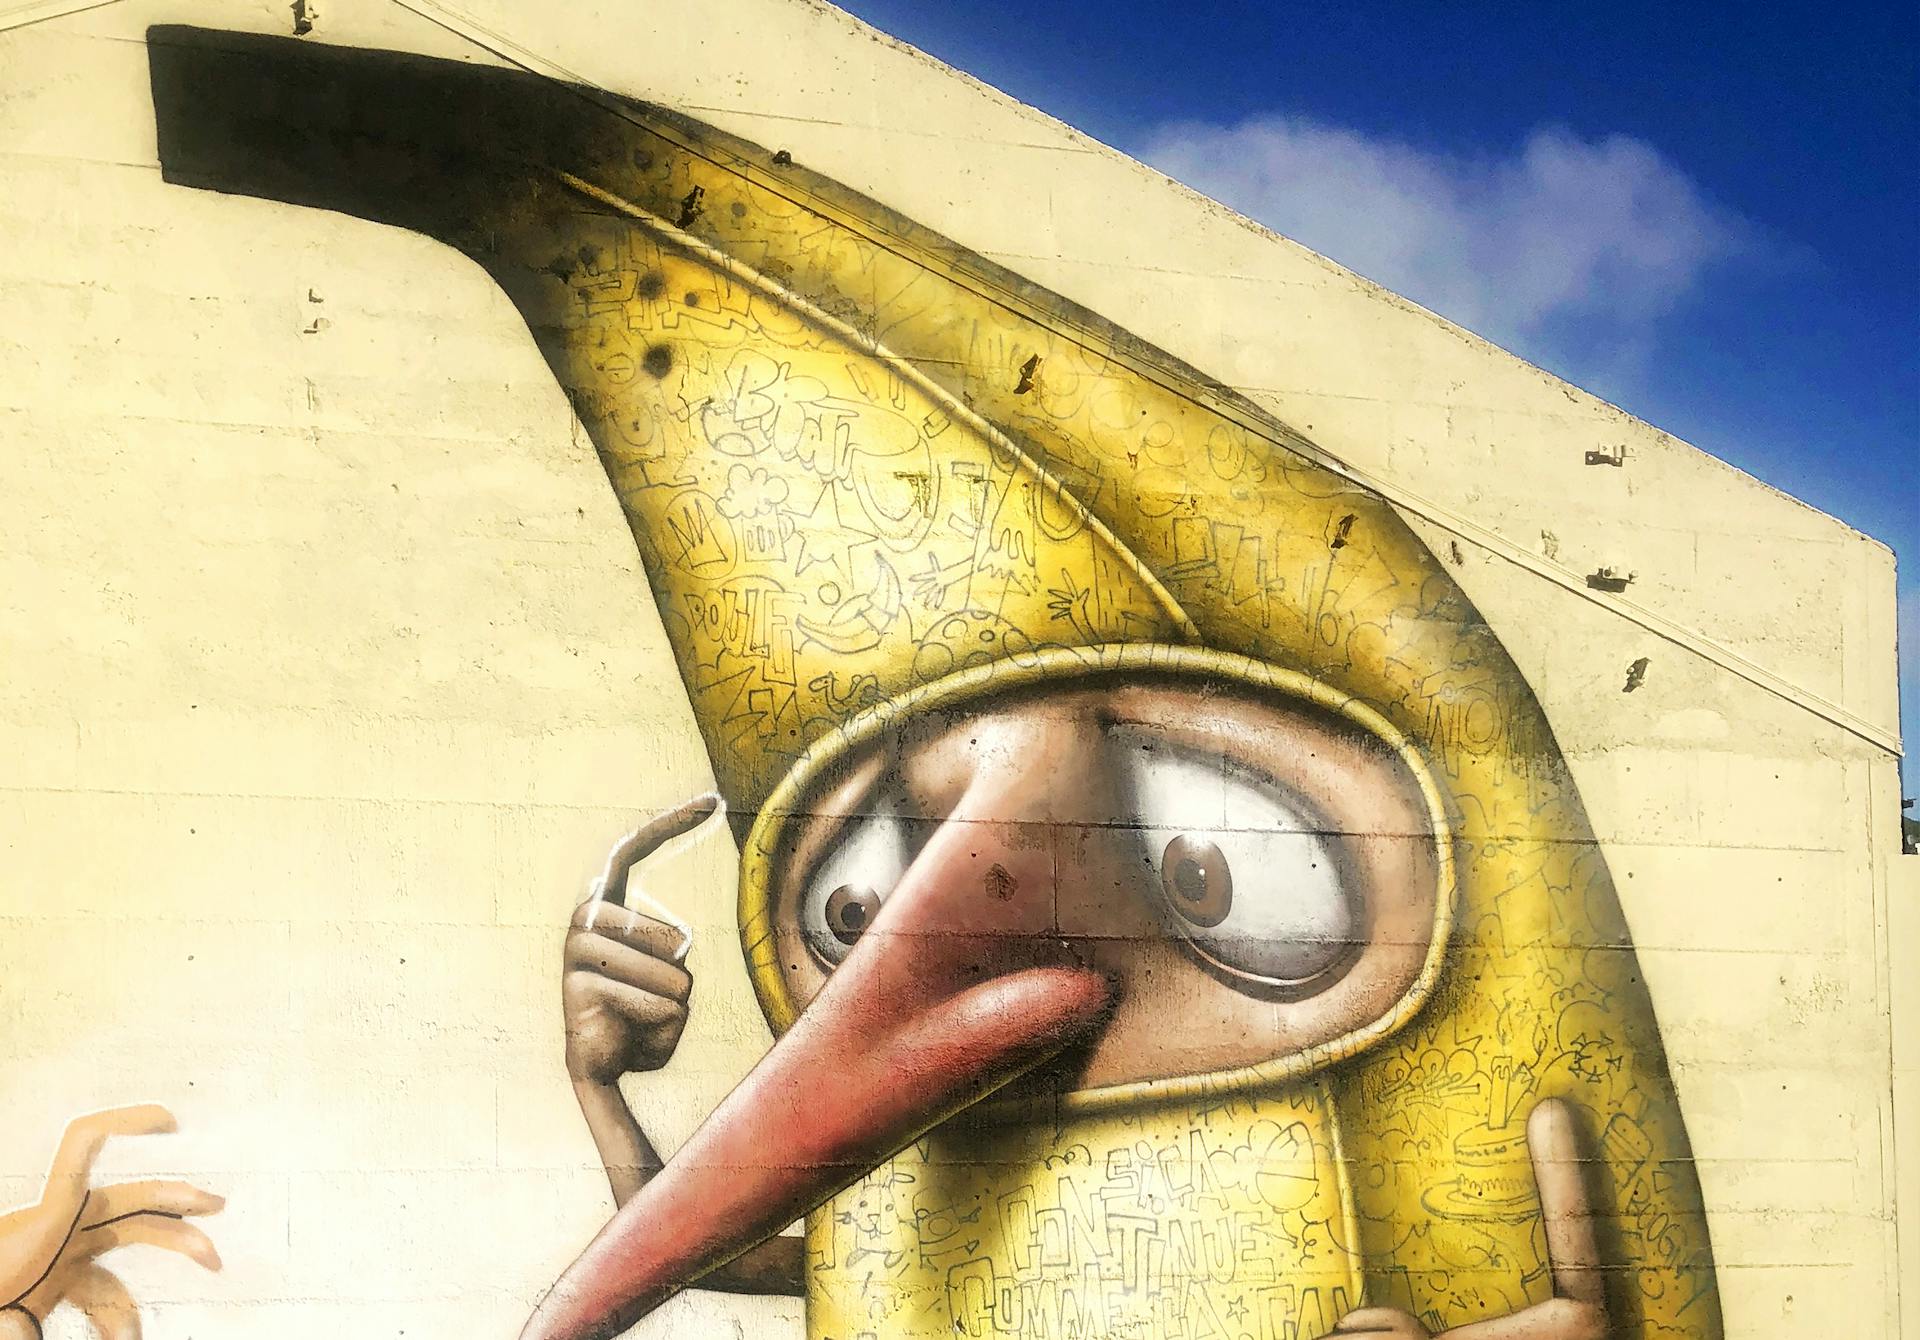 Illustration en peinture murale d'un personnage en costume de banane lors du projet "Une partie de banane"